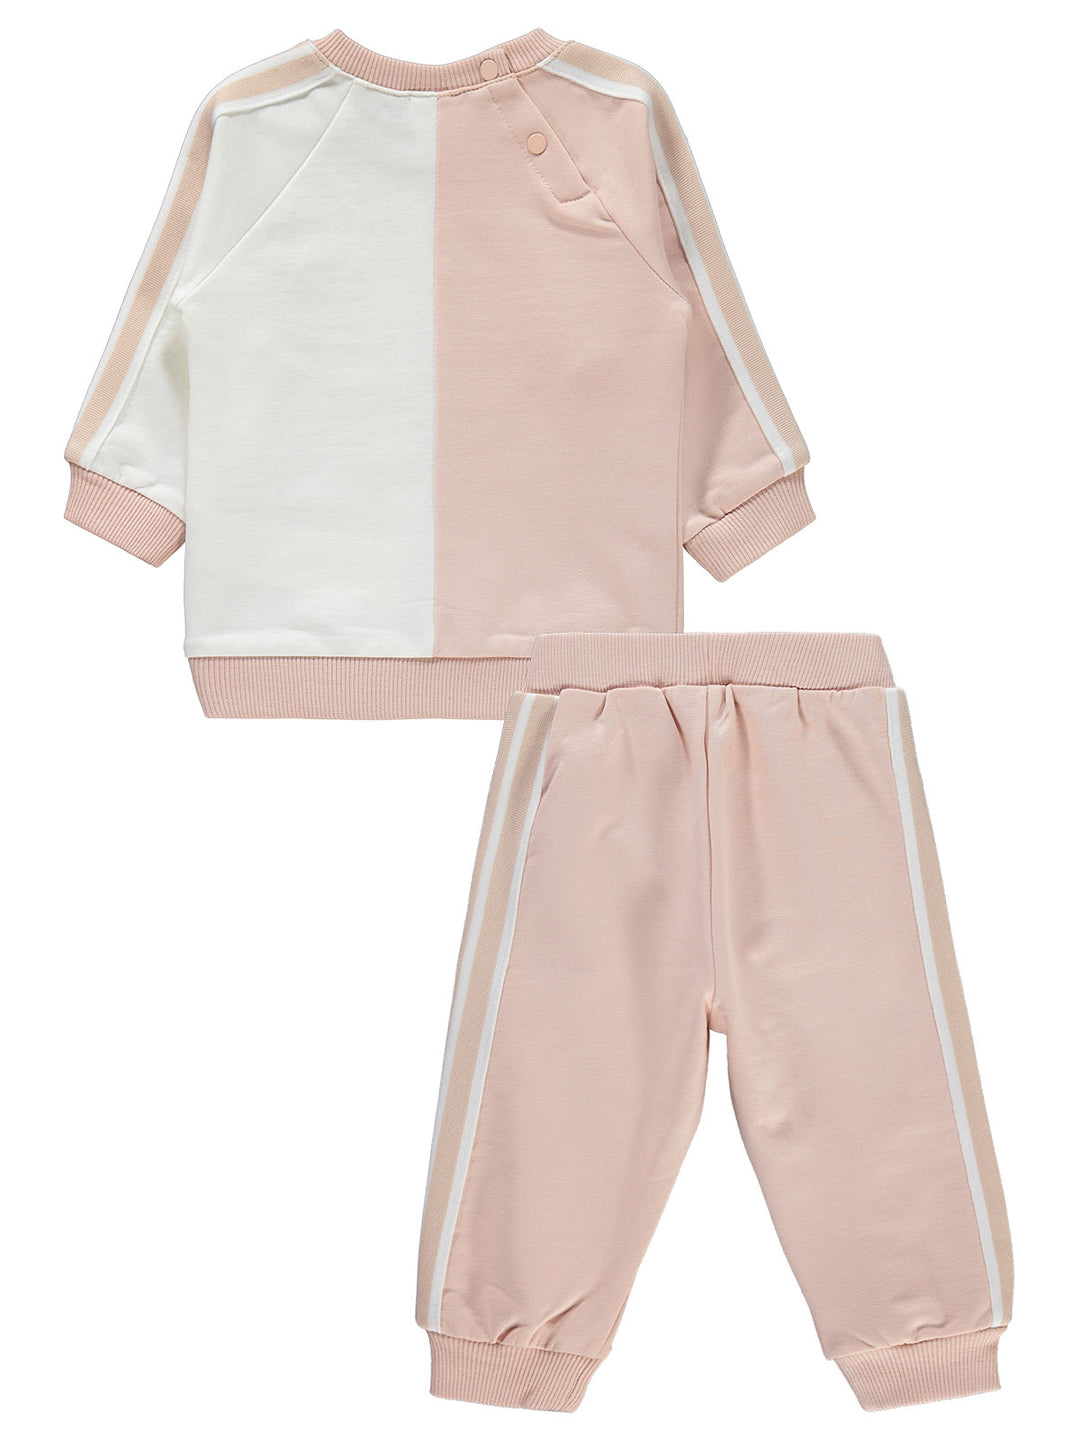 Civil Girls Pajama Suit Cotton L/S 2Pcs #E412 (W-22)